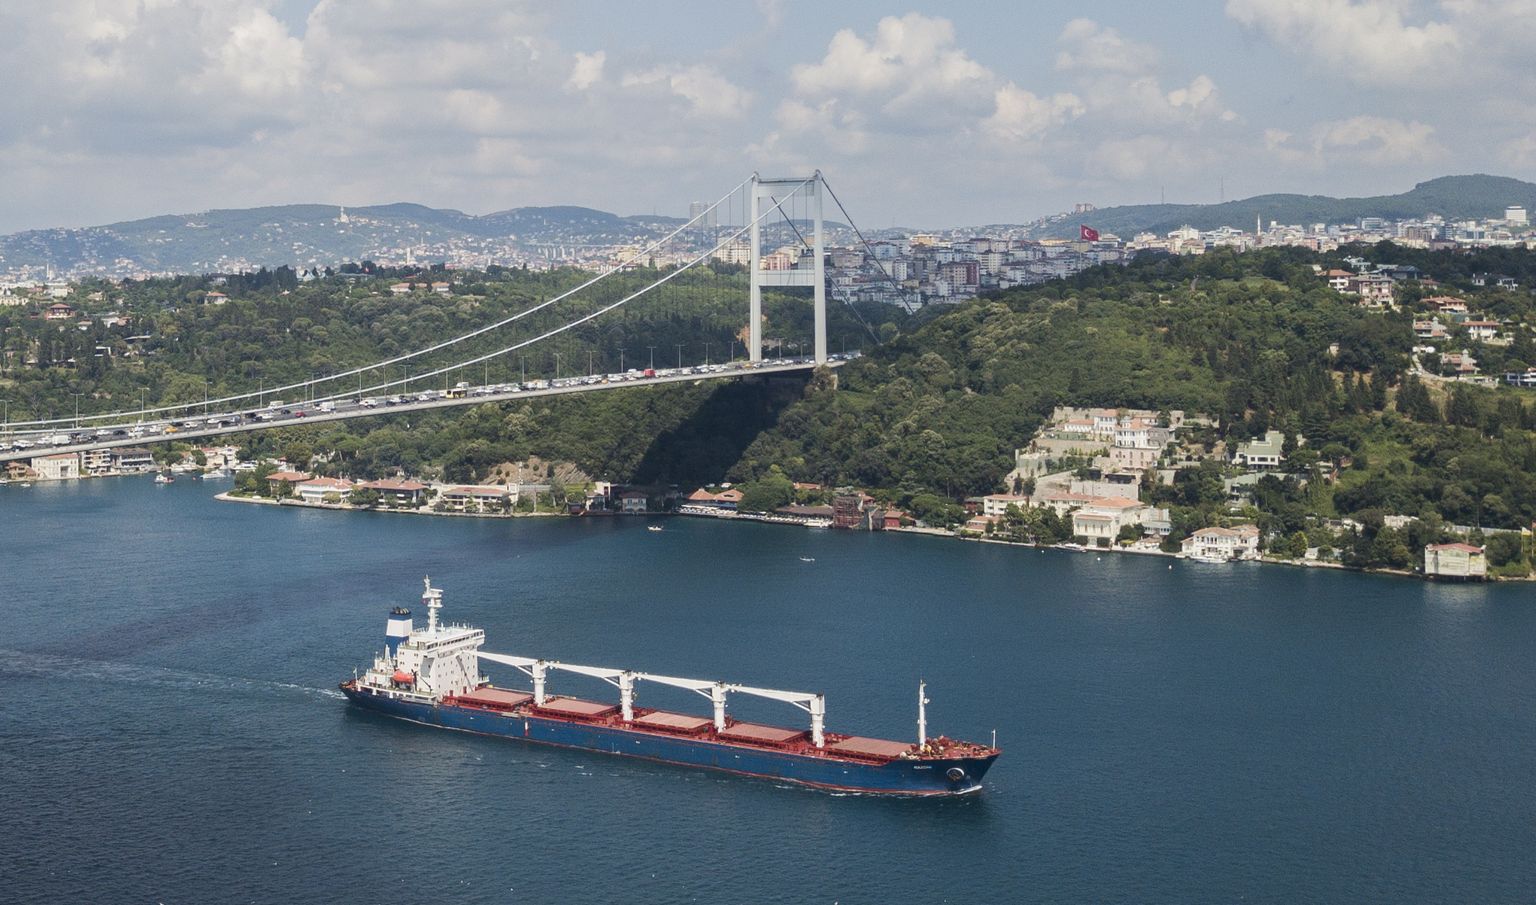 Sierra Leone lipu all seilav Razoni 3. augustil sõitmas läbi Bosporuse väina, lastiks 26 000 tonni Ukraina põllumajandustooteid.